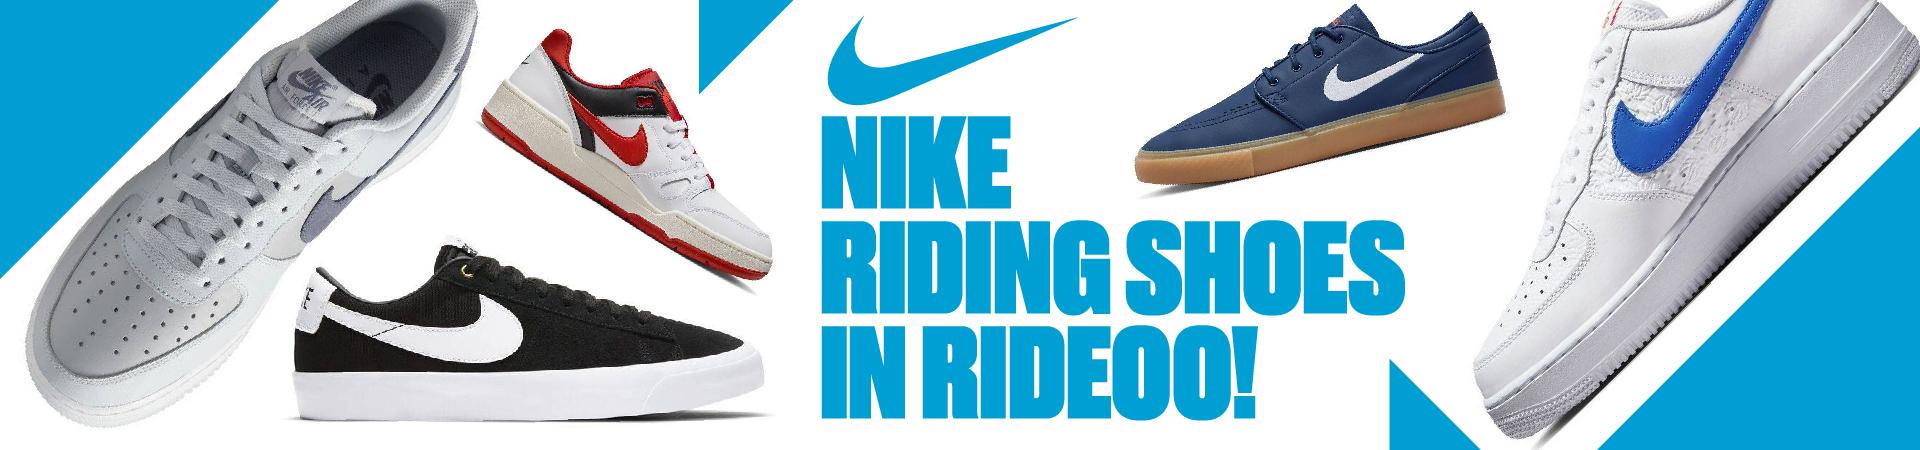 Обувь Nike в магазине Rideoo